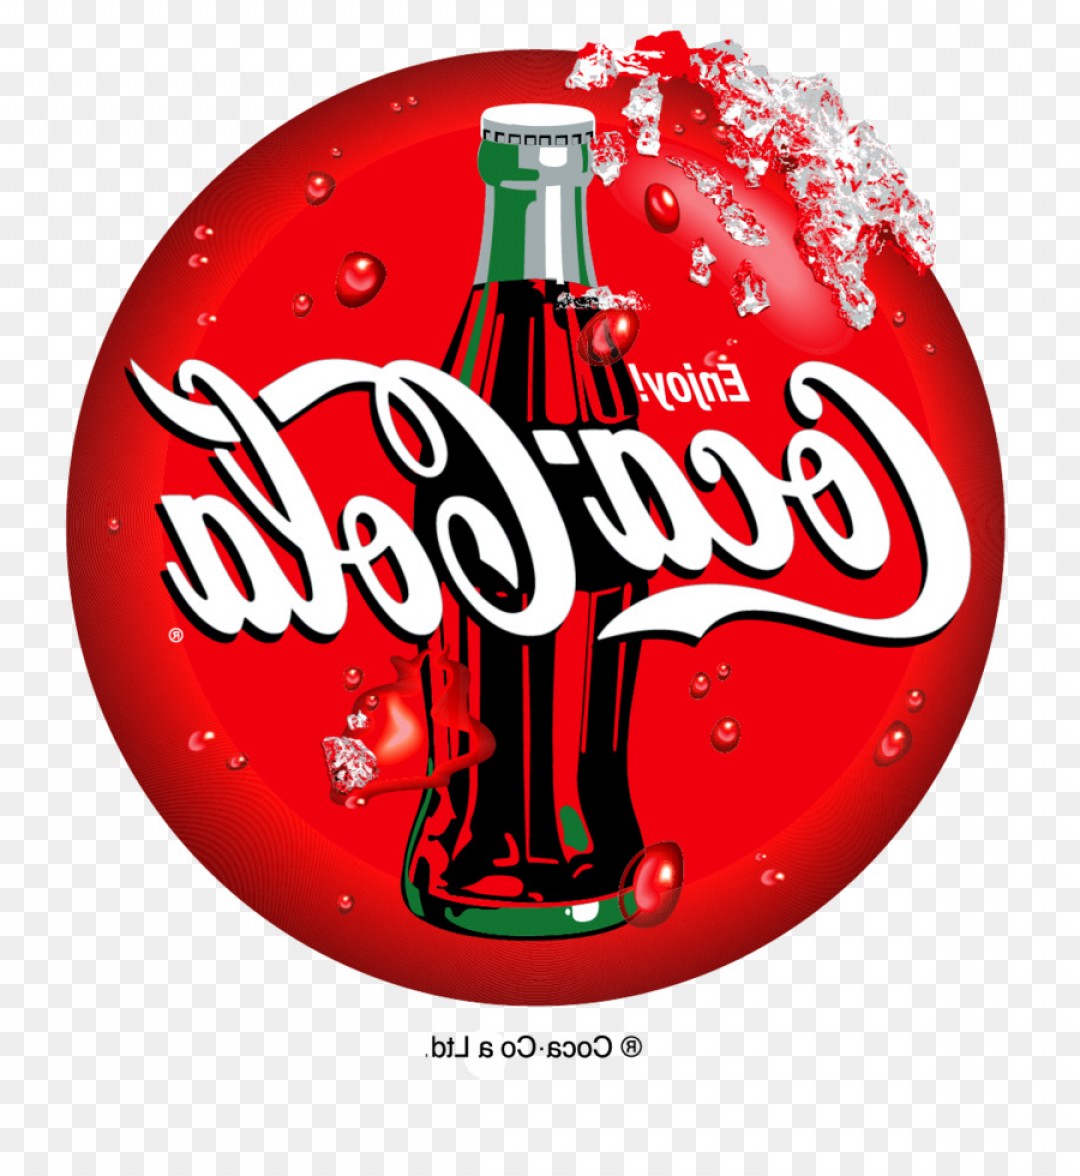 Coke Vector at GetDrawings | Free download